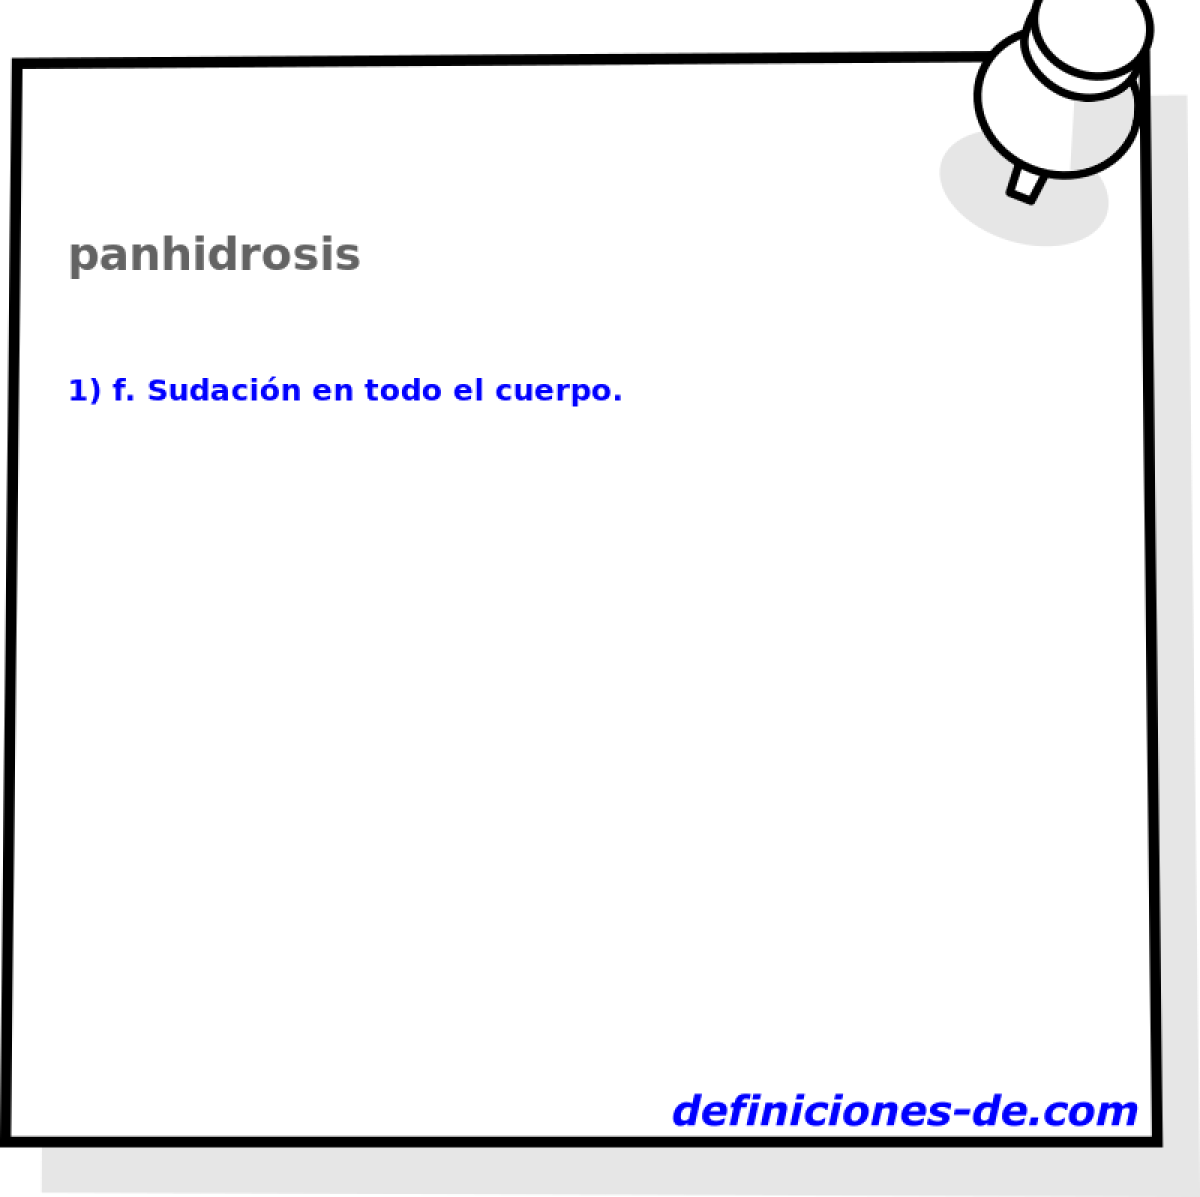 panhidrosis 